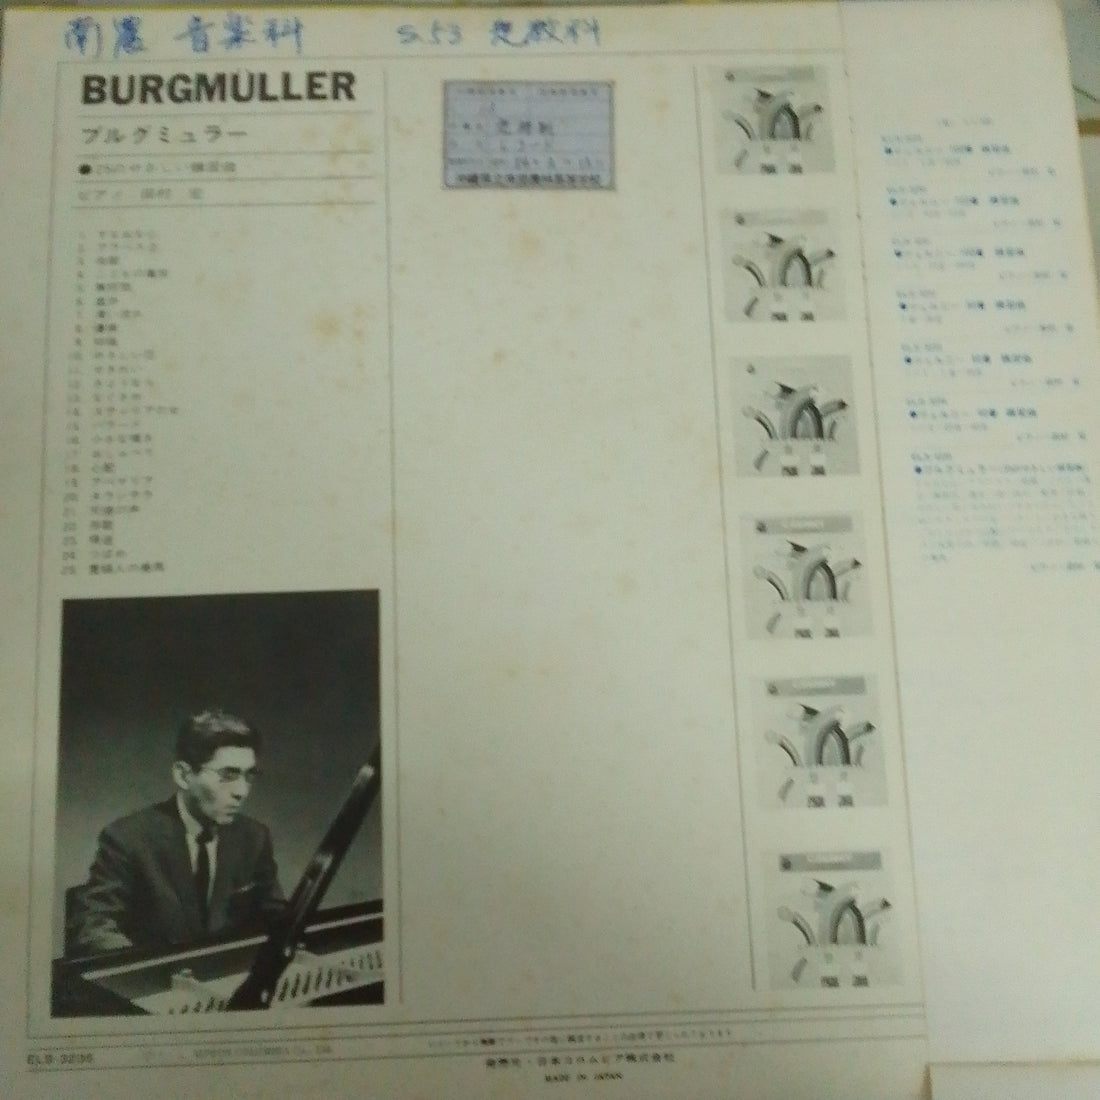 Hiroshi Tamura  - ブルグミュラー 25 のやさしい練習曲 (Vinyl) (VG+)